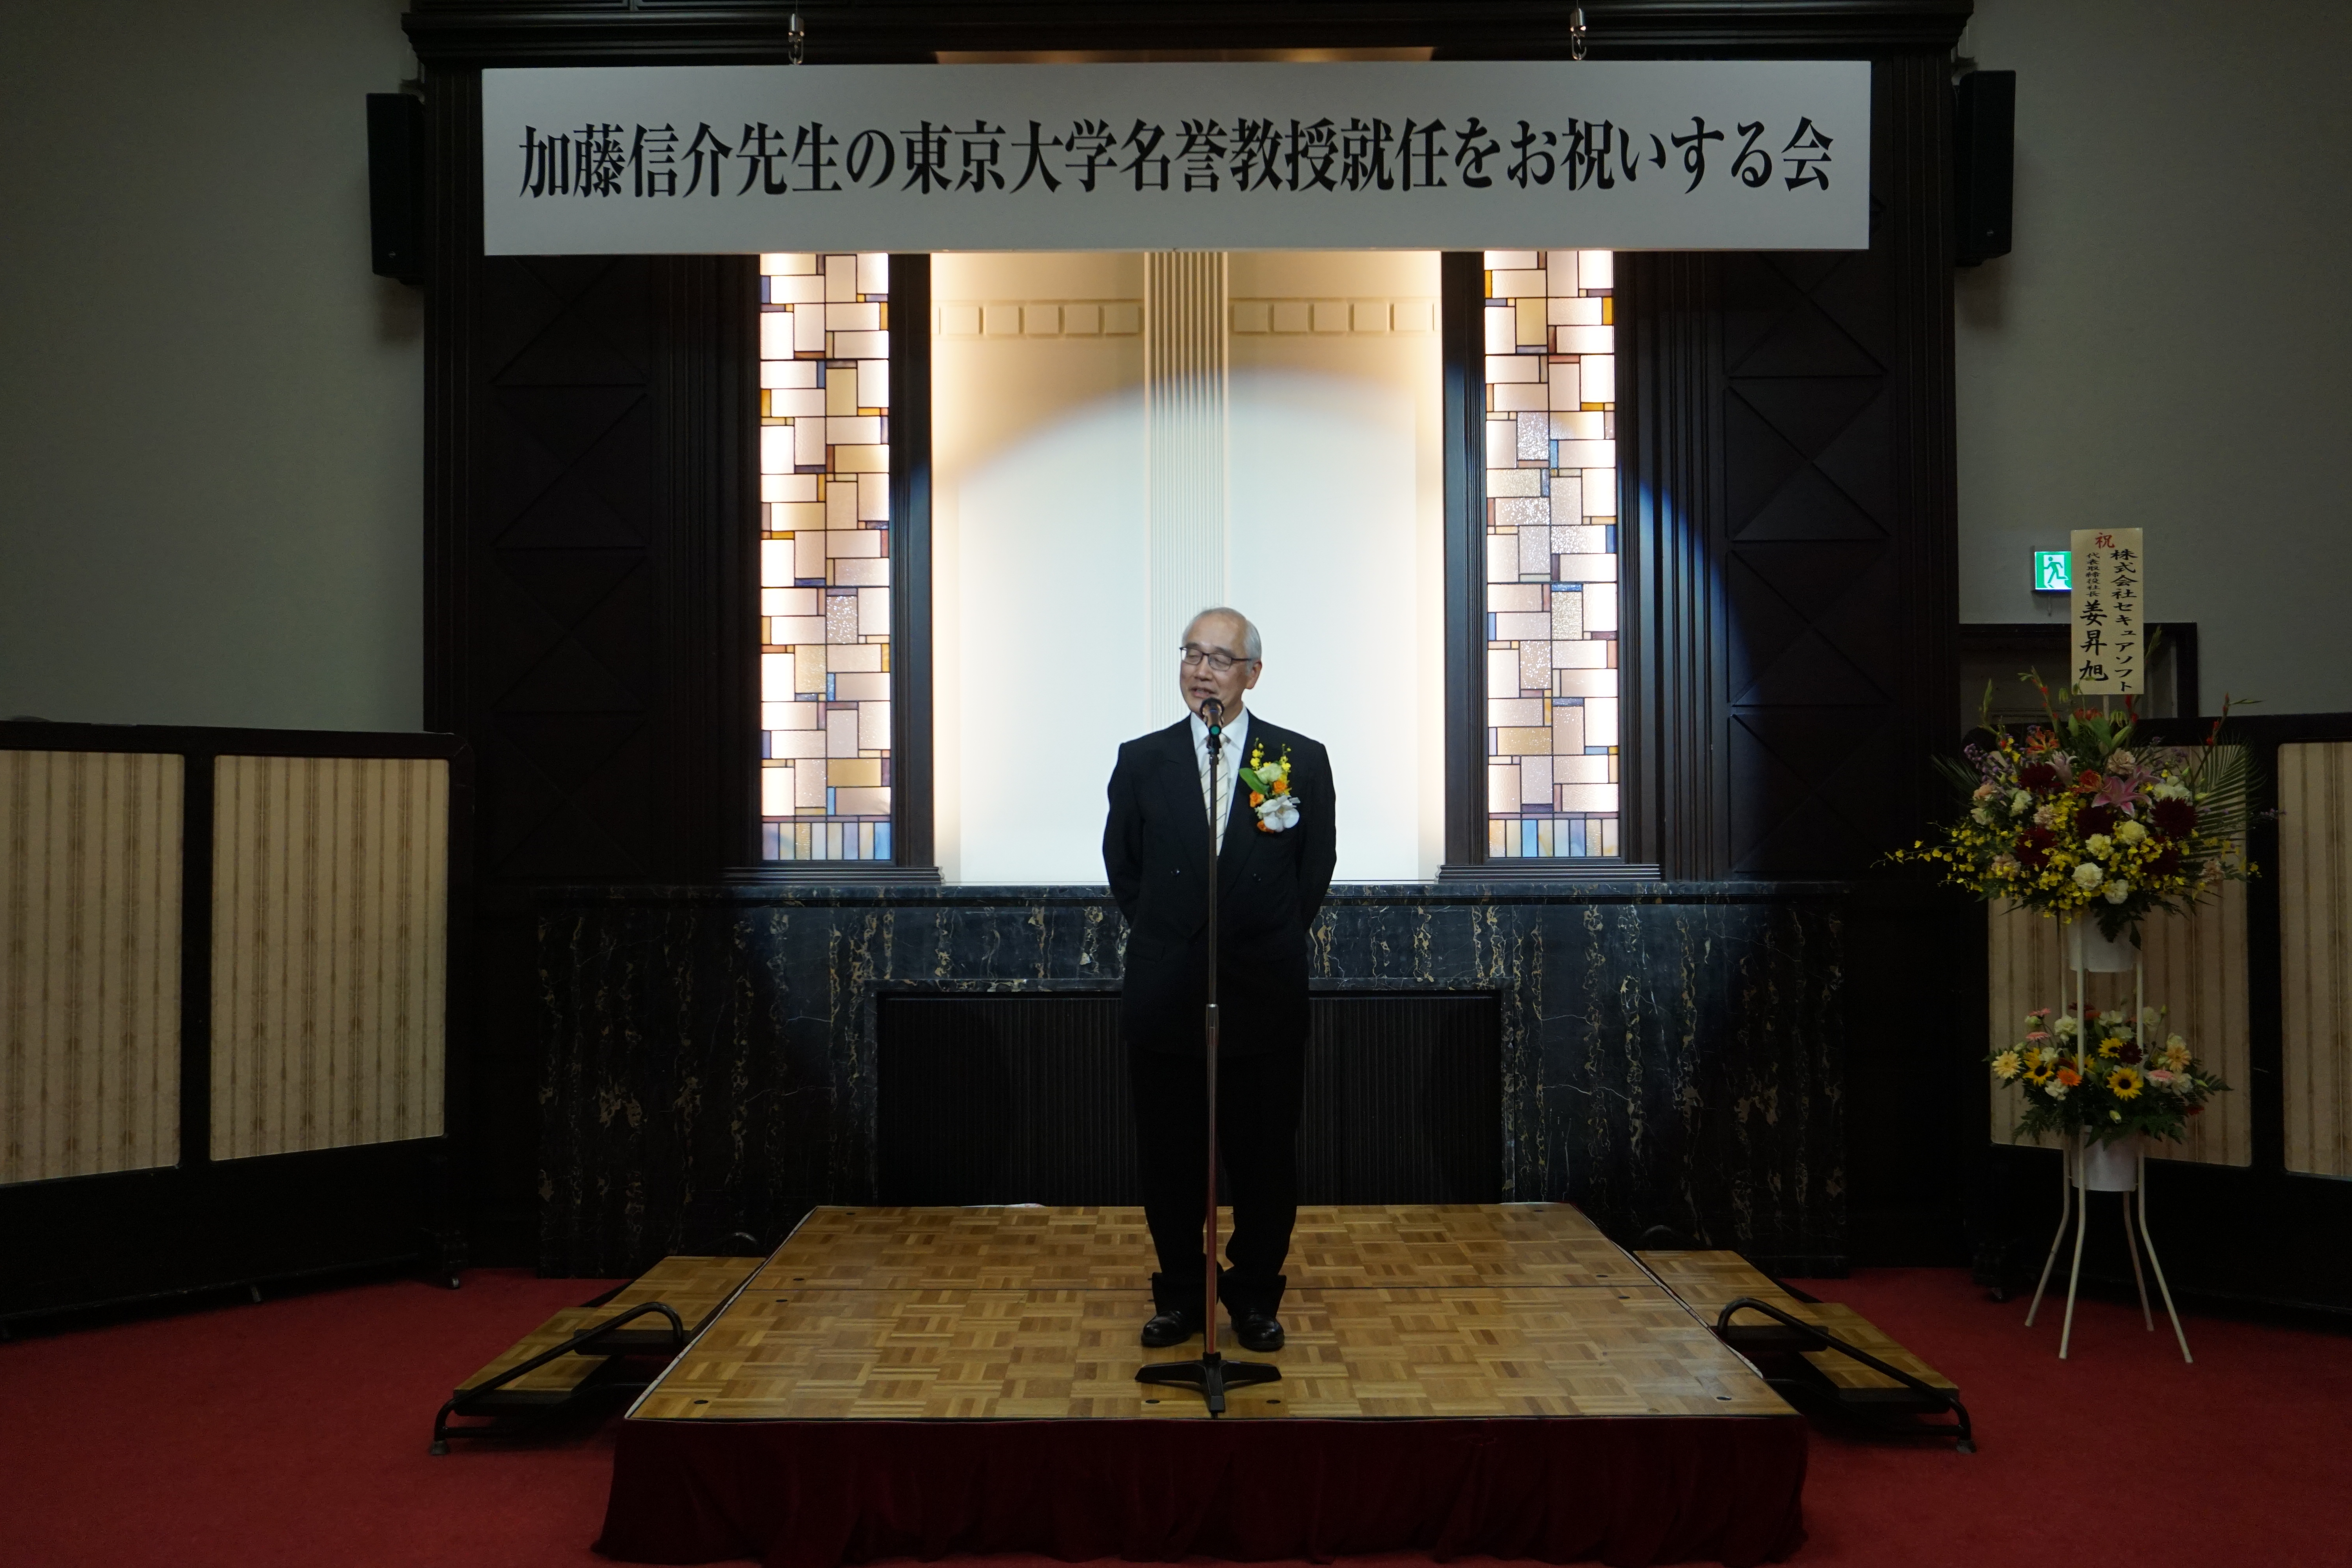 加藤信介先生の東京大学名誉教授就任を祝いする会